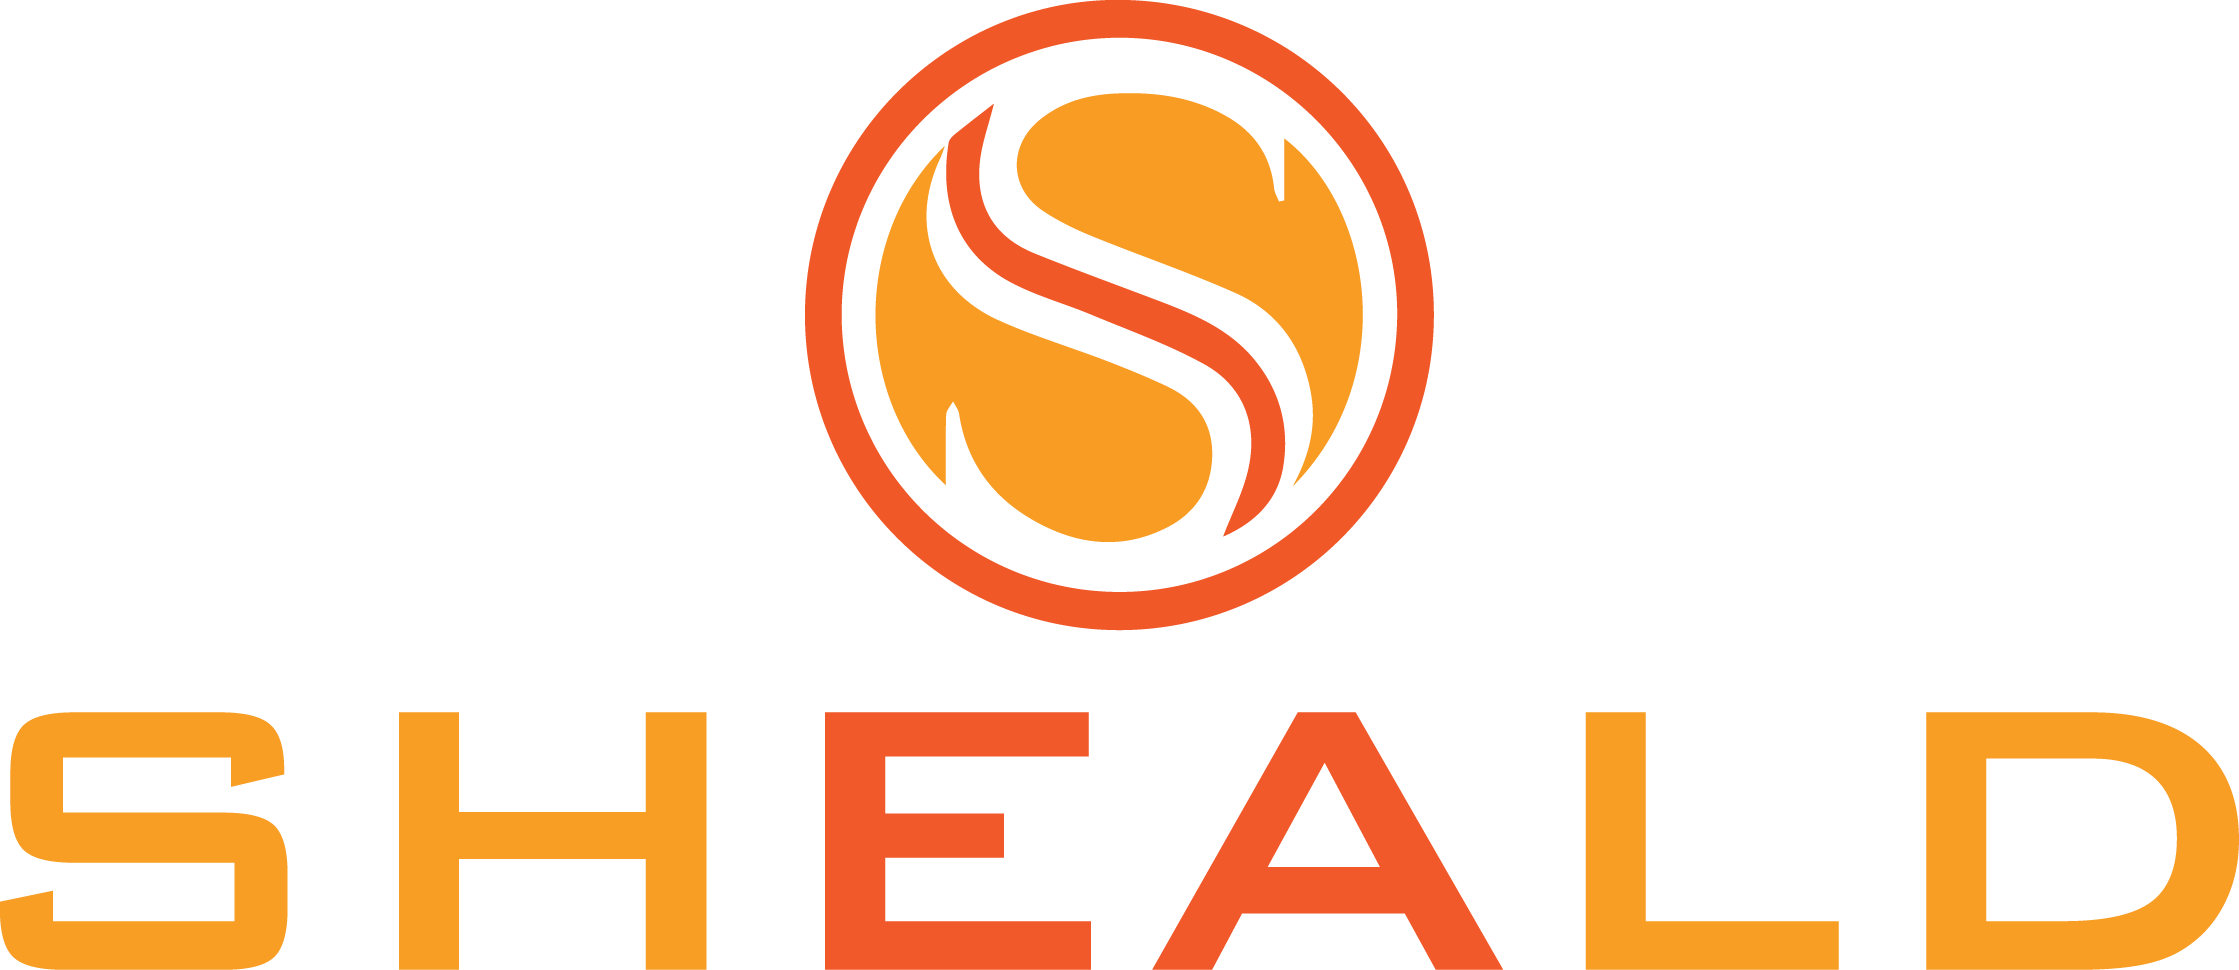 Sheald Ltd